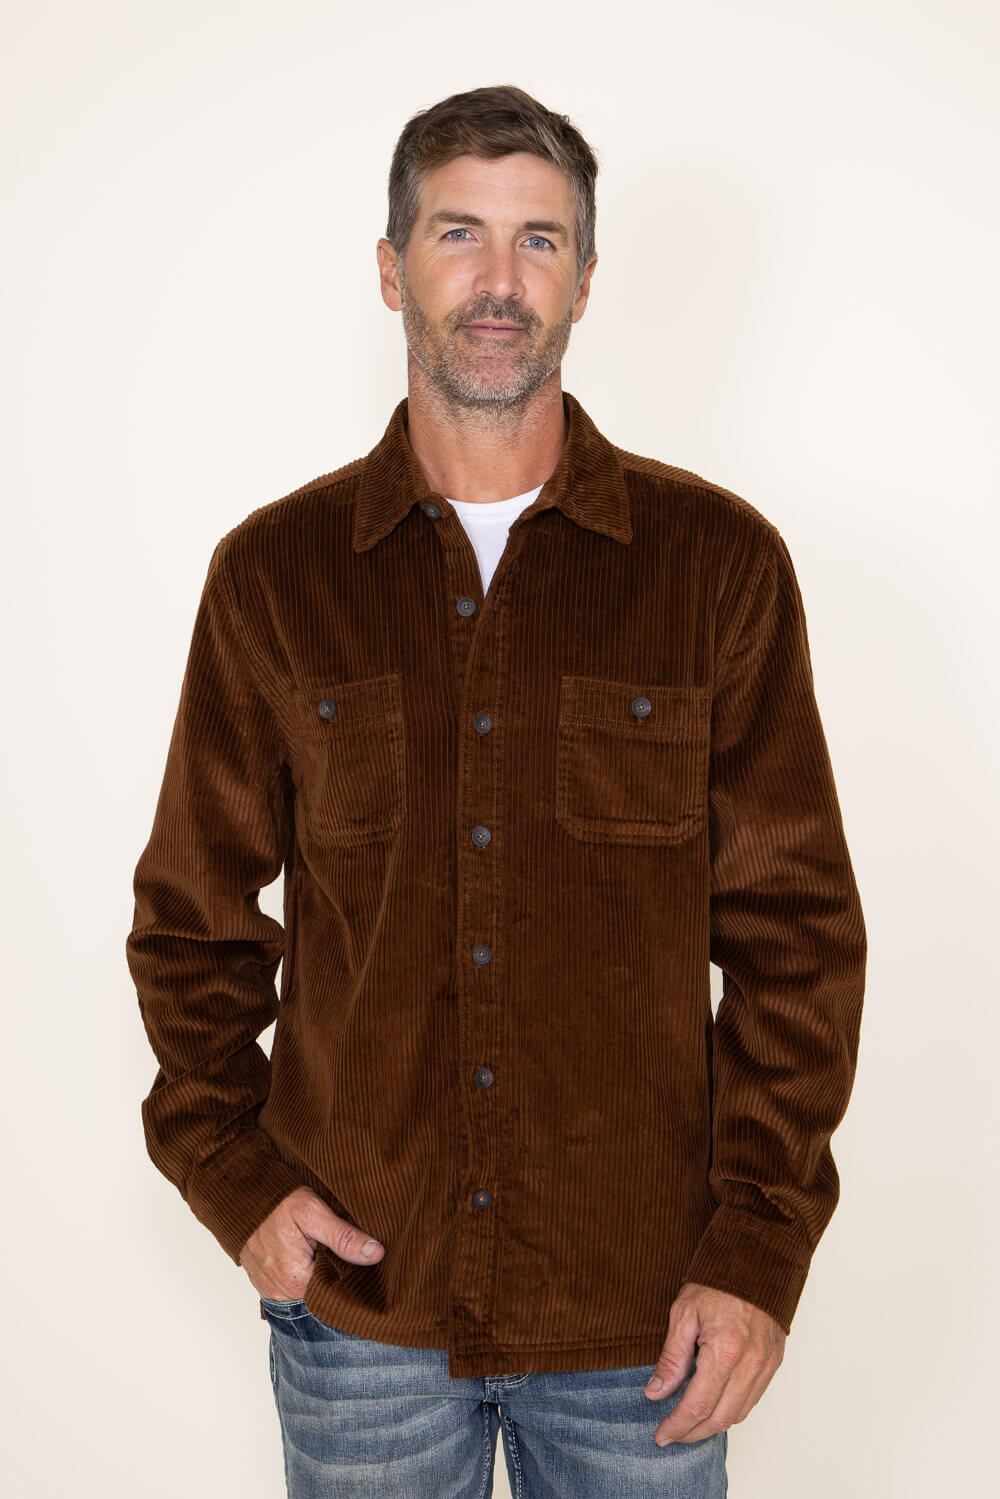 Weatherproof Vintage Corduroy Shirt Jacket for Men in Brown